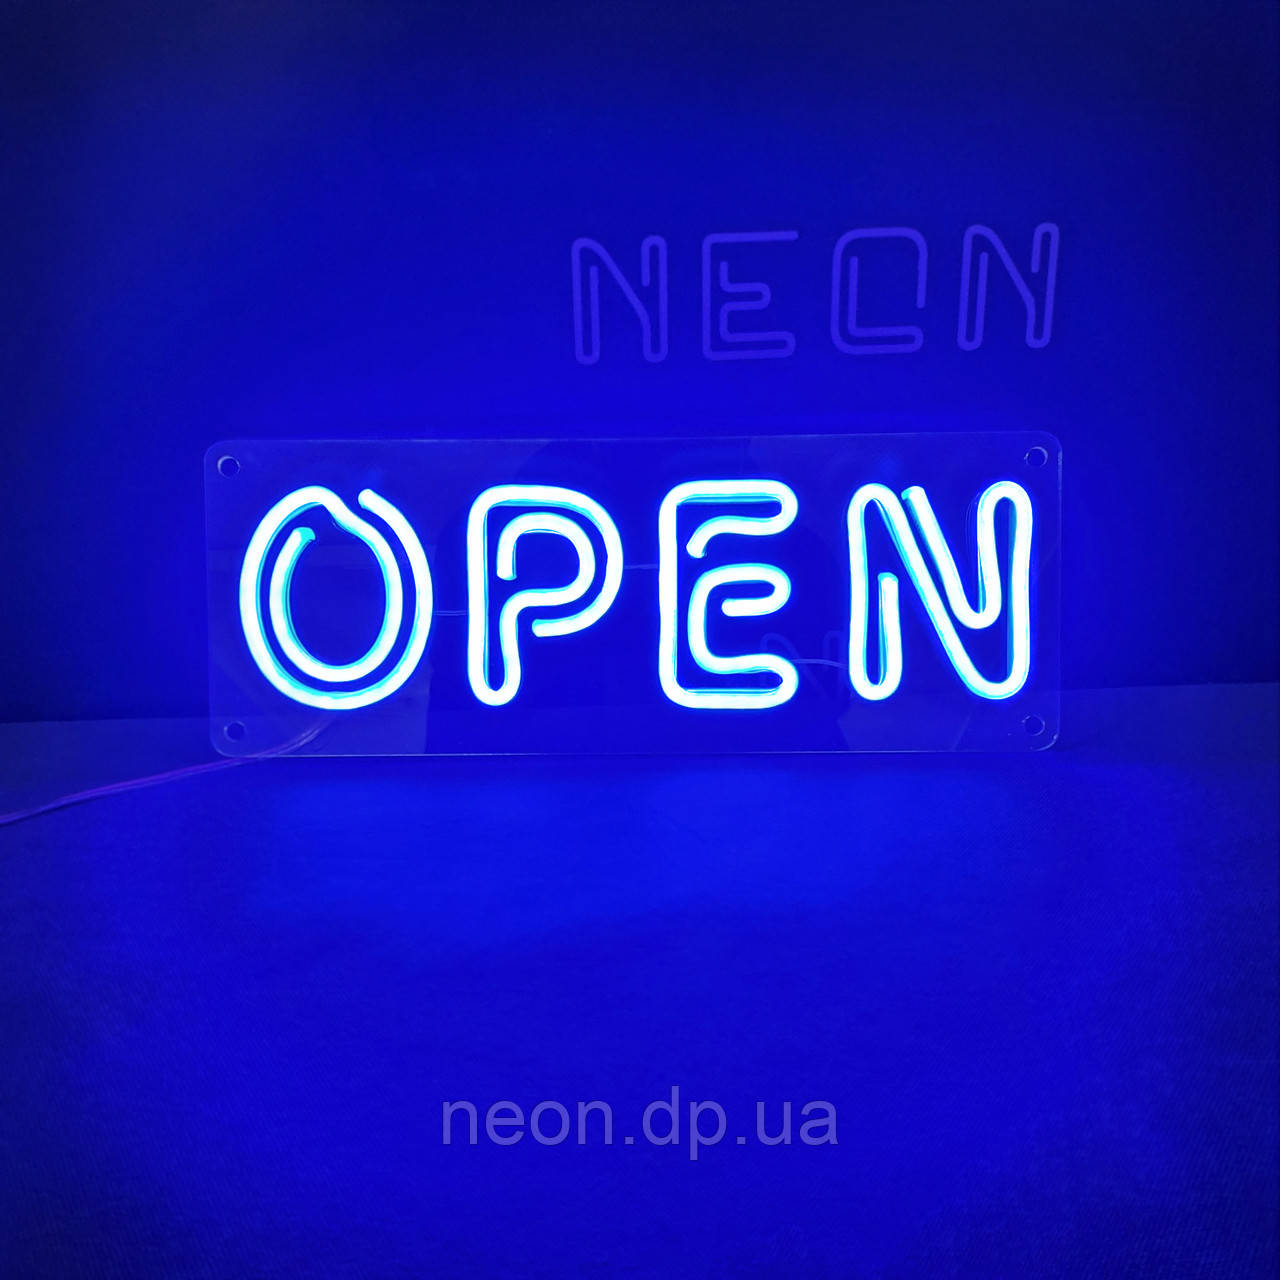 Неонова вивіска "Open"